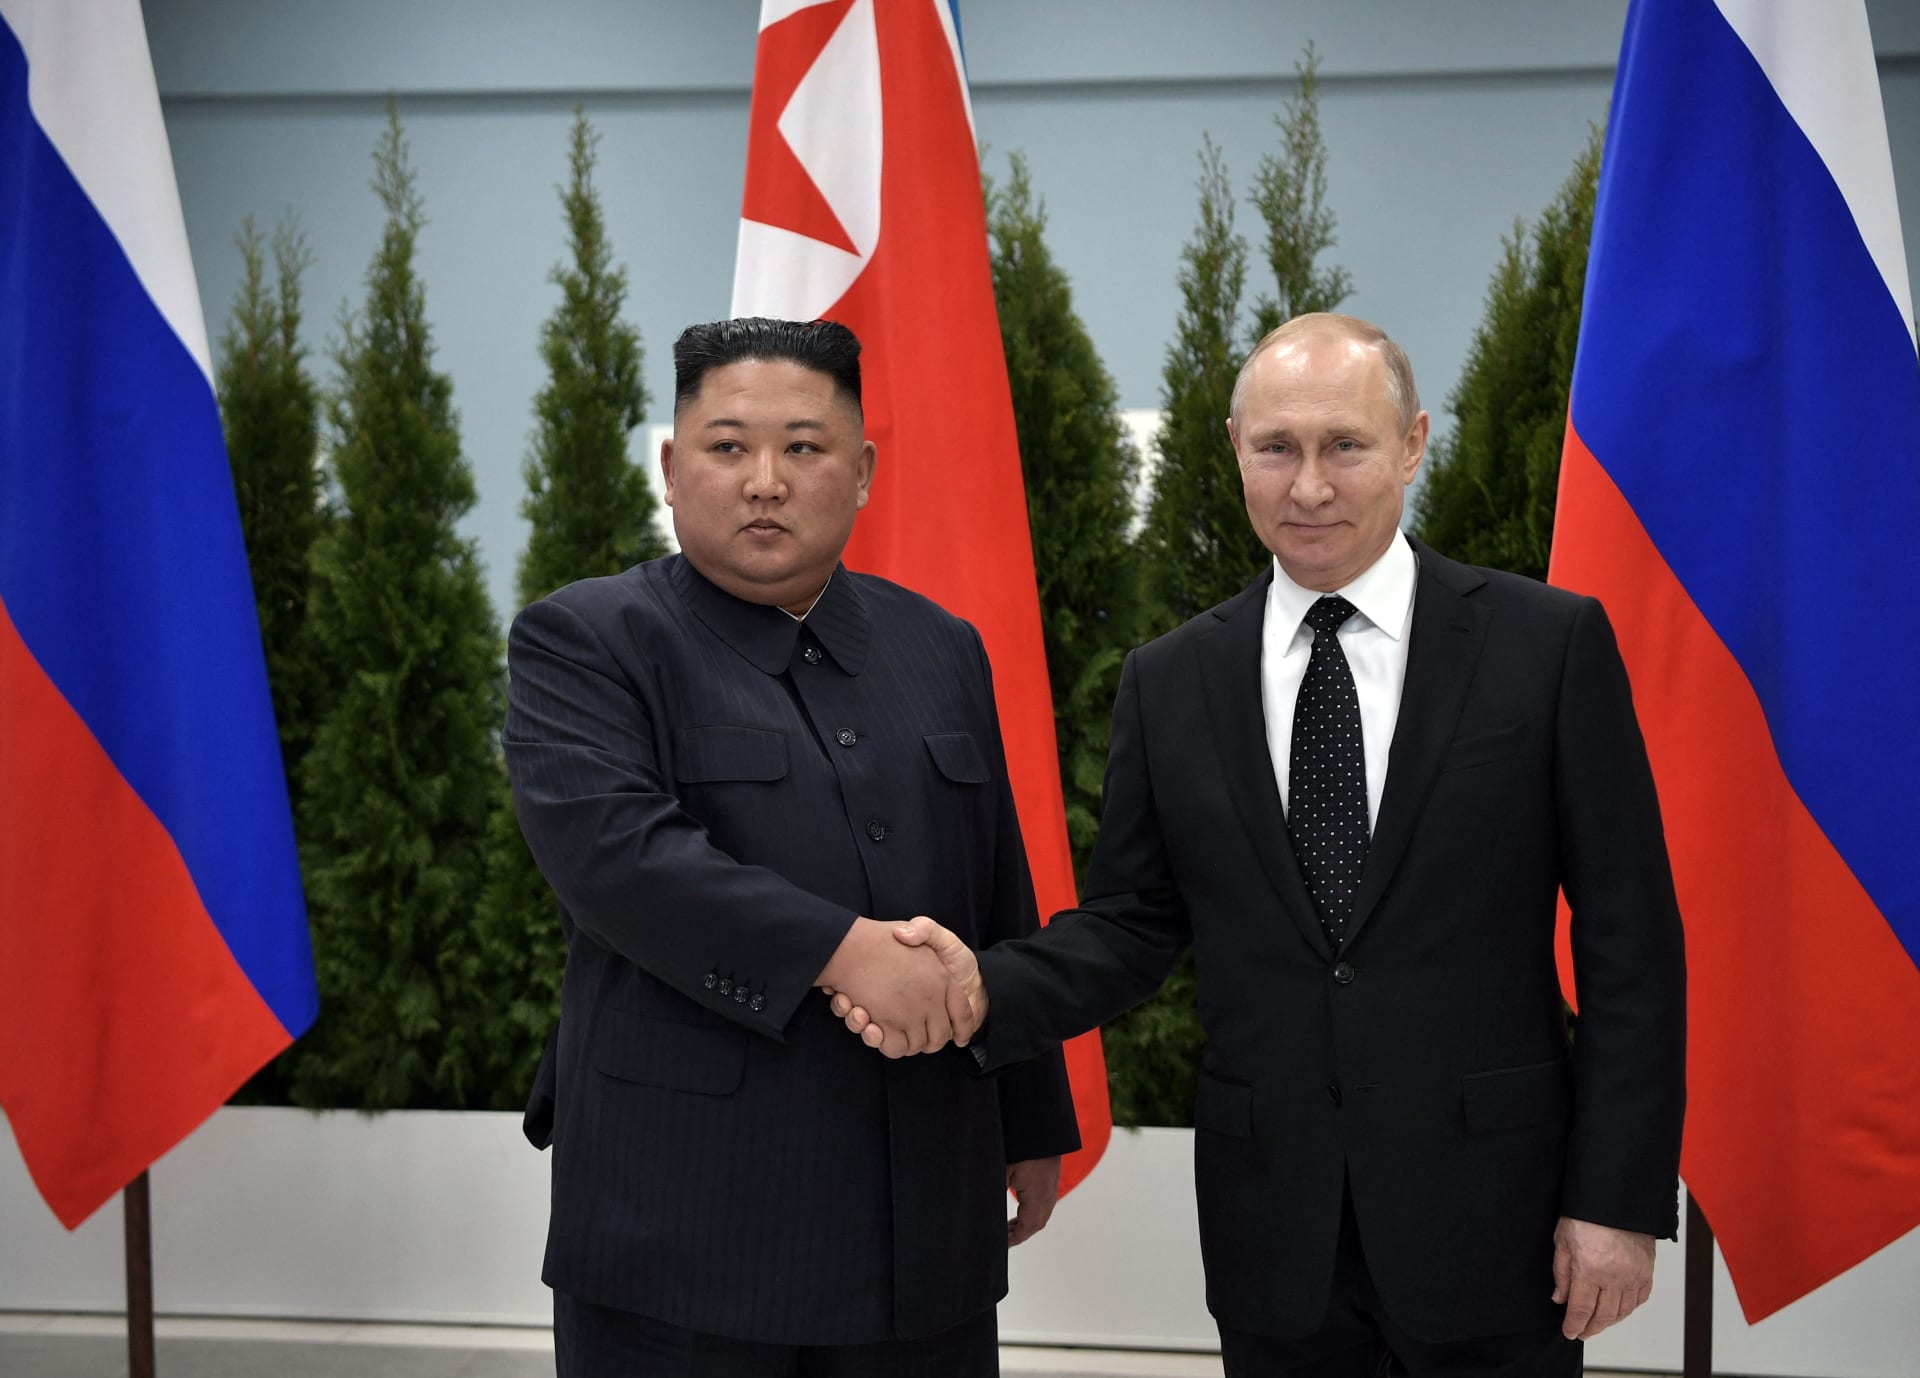 مسئول روسي: زيارة "بوتين" إلى كوريا الشمالية ستكون "إيجابية"